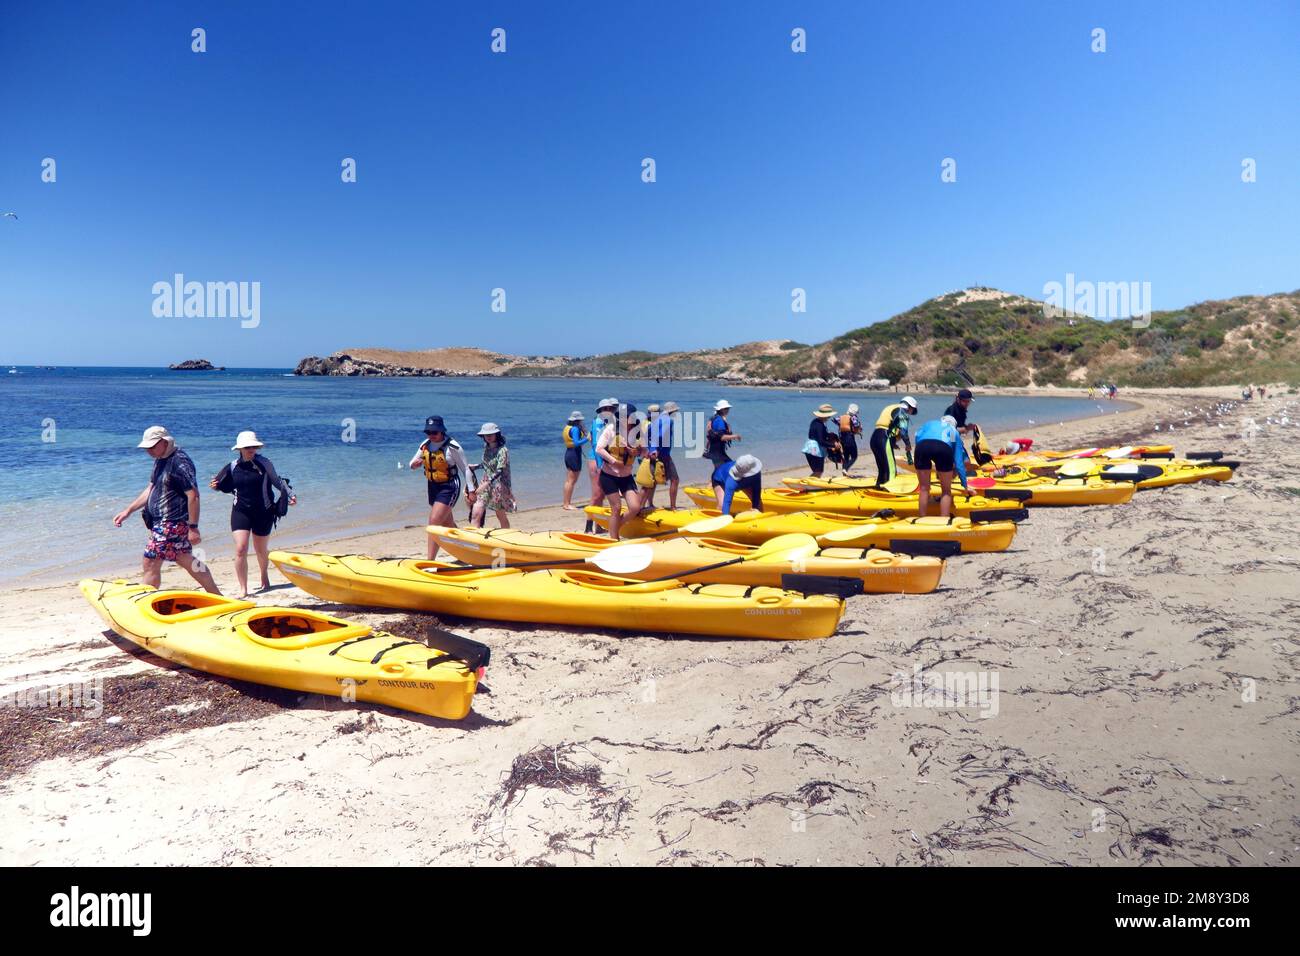 Des kayakistes se préparent sur la plage, Penguin Island, Shoalwater Islands Marine Park, près de Perth, Australie occidentale. Pas de MR ou PR Banque D'Images